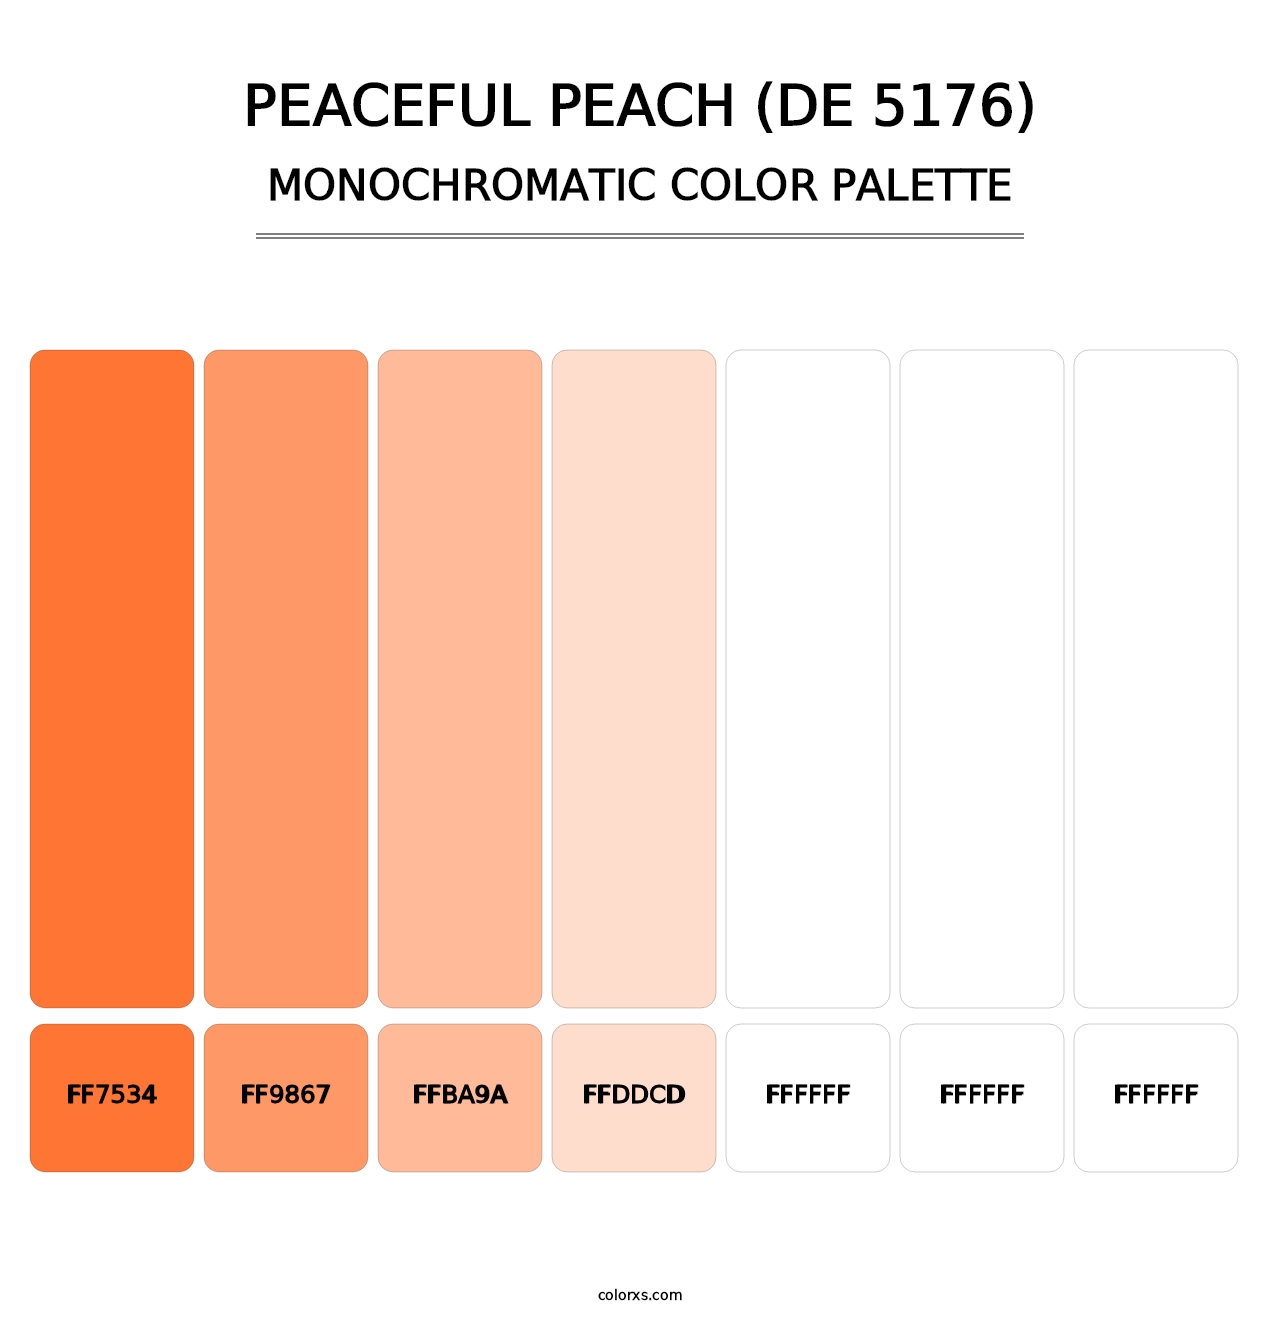 Peaceful Peach (DE 5176) - Monochromatic Color Palette